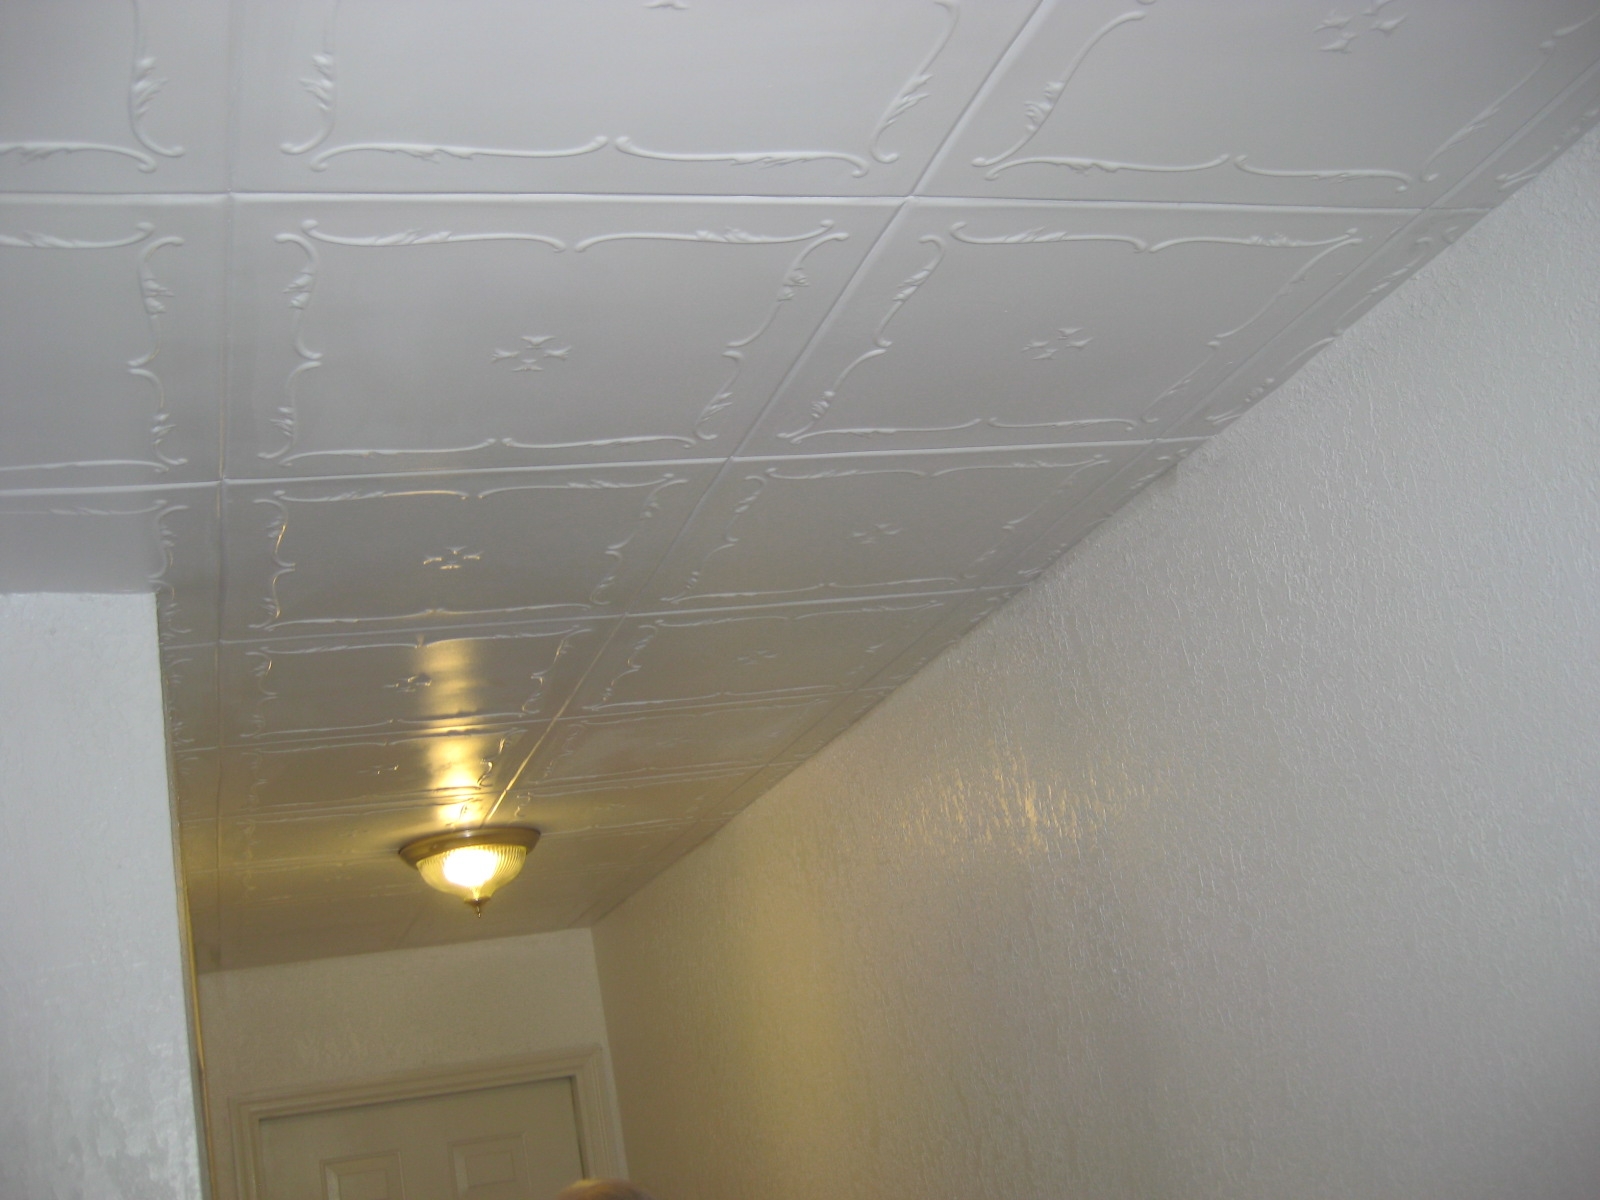 Styrofoam Beadboard Ceiling Tiles Styrofoam Beadboard Ceiling Tiles styrofoam ceiling tile polystyrene styrofoam ceiling tiles 1600 X 1200